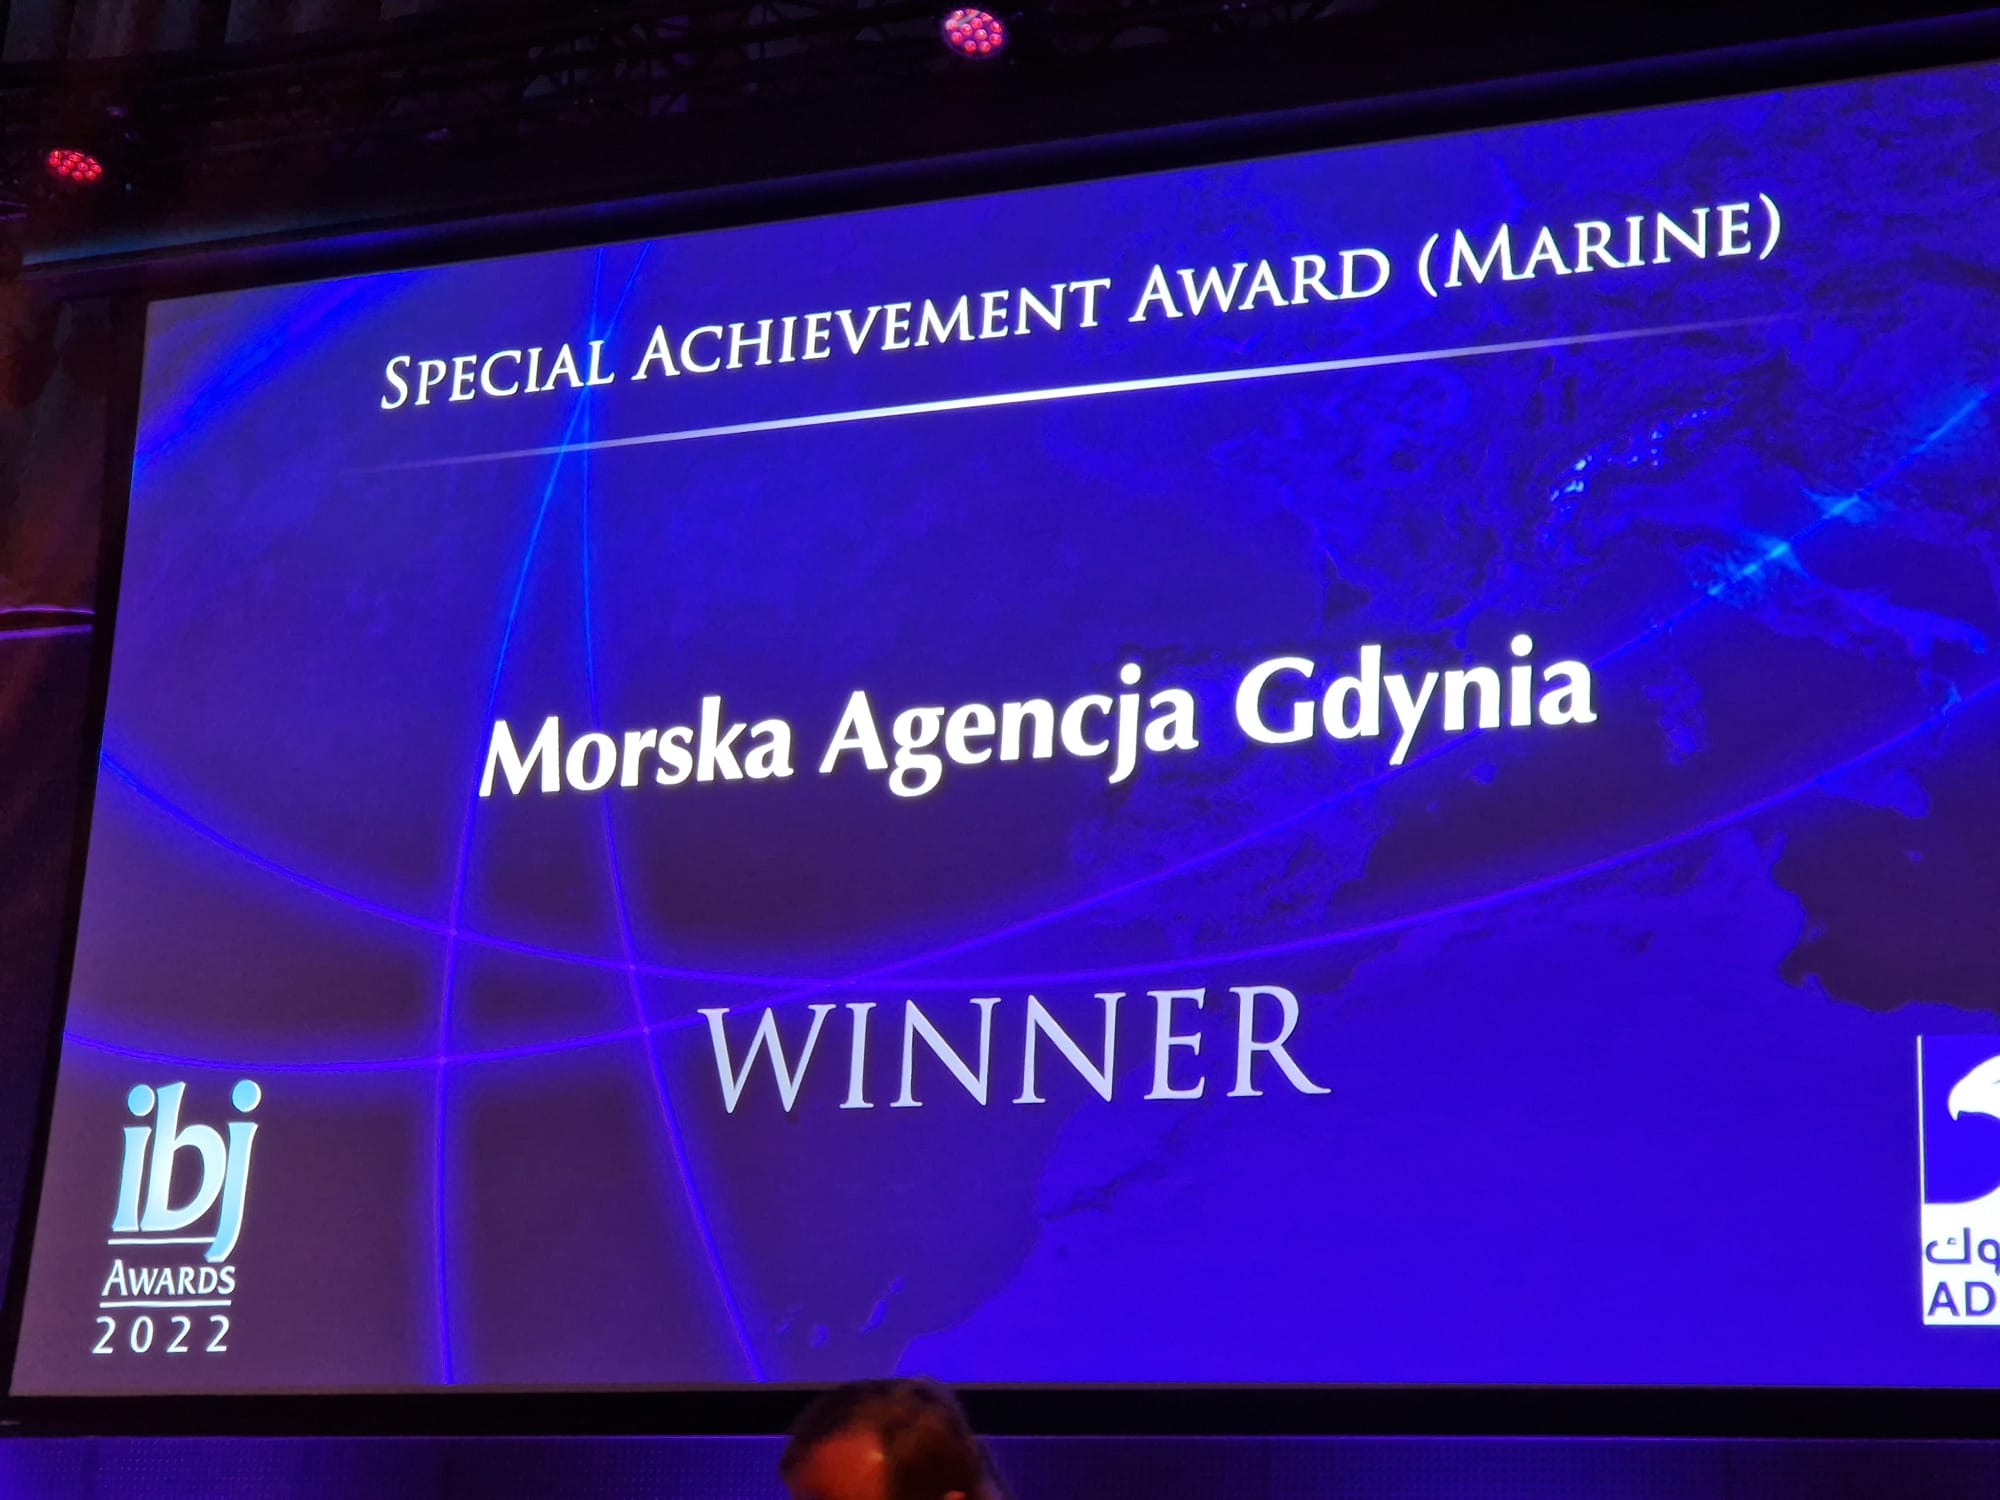 #MAGnews - and the IBJ Award goes to Morska Agencja Gdynia!